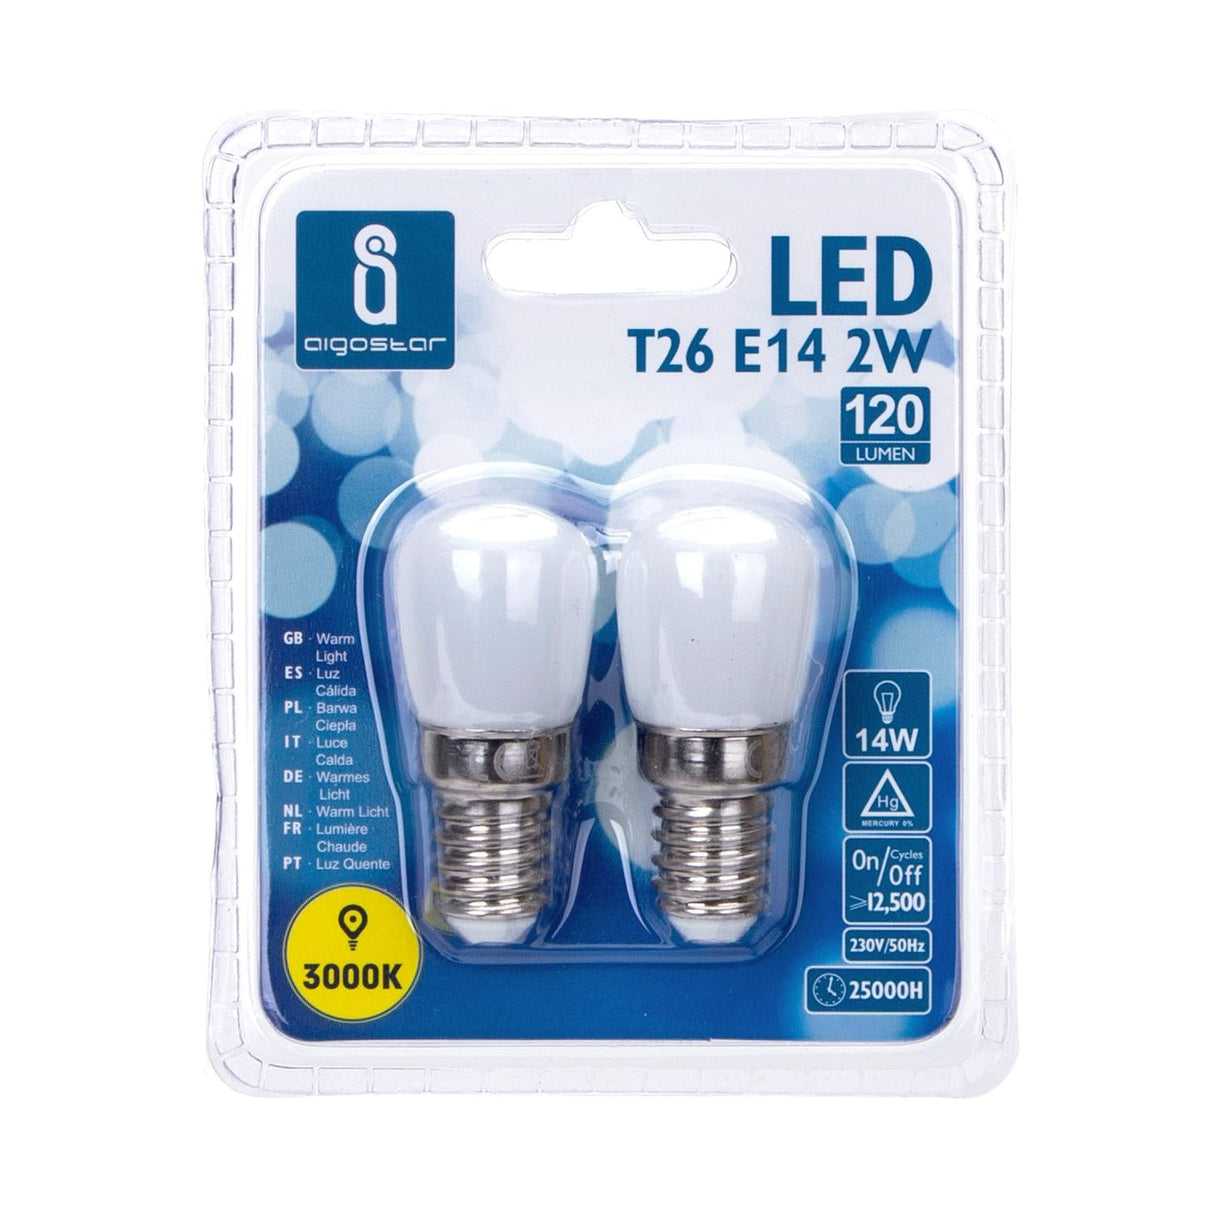 LED Leuchtmittel, E14, 2 W, 120 lm, 3000 K, 2 Stk. - Lichttechnik24.de